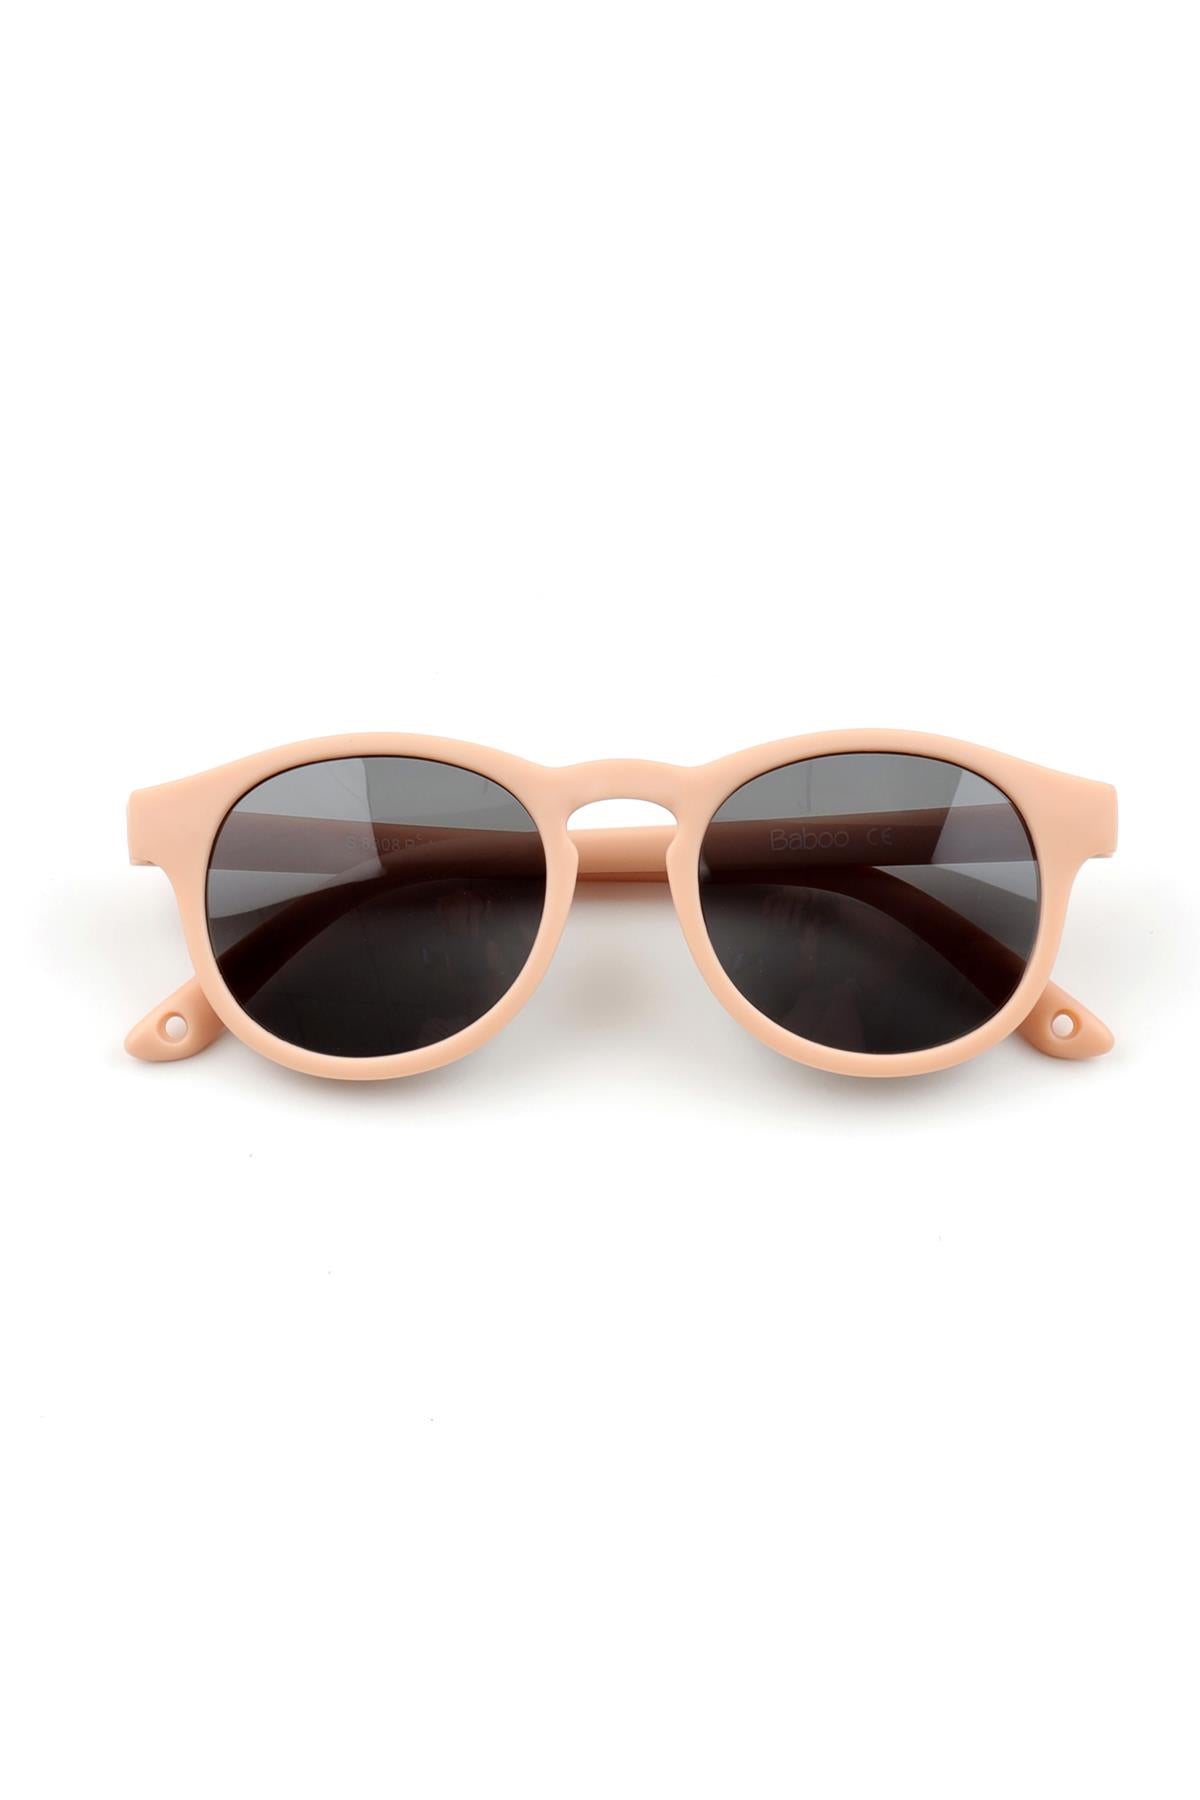 Midi Size Children's Sunglasses Pink